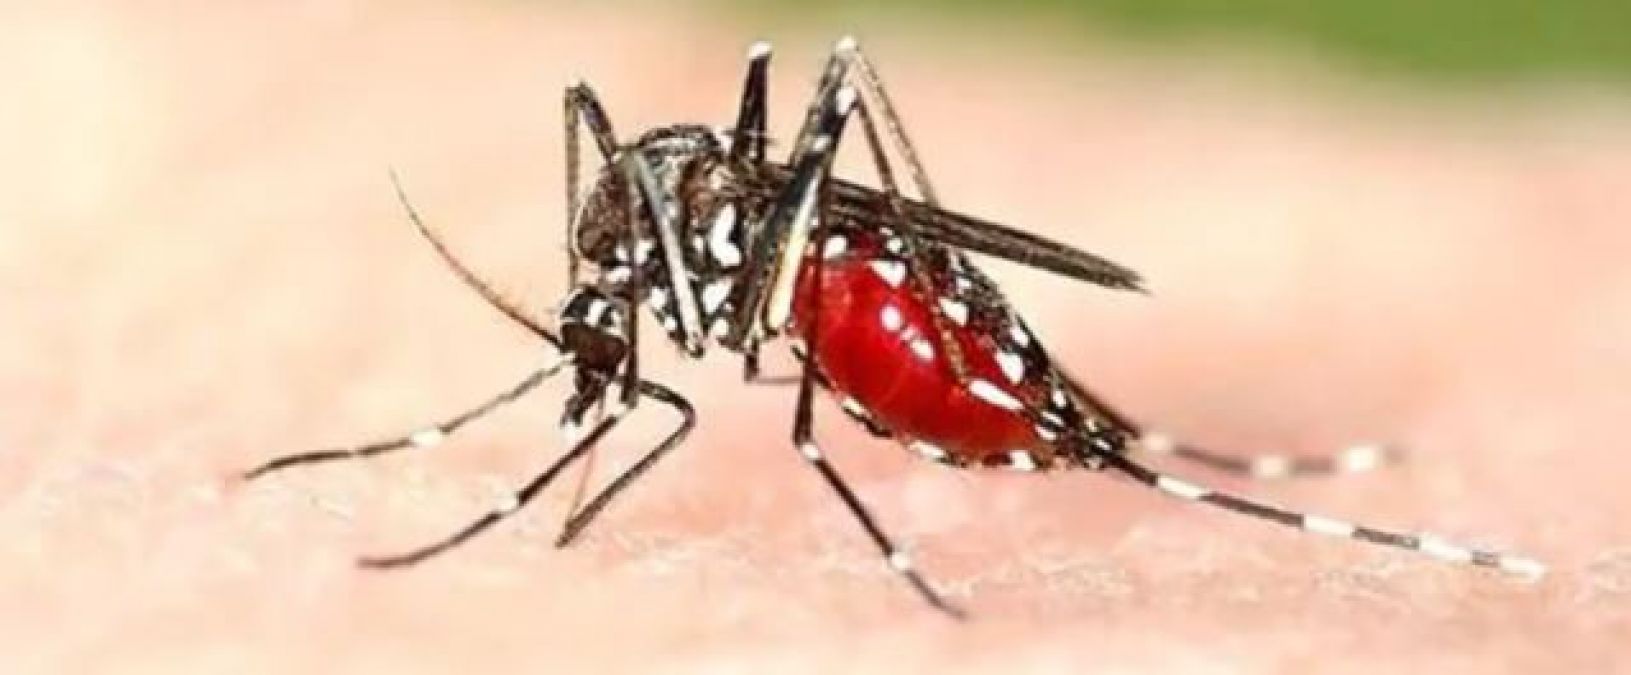 ग्वालियर में डेंगू मरीजों की संख्या ने पार किया 700 का आंकड़ा